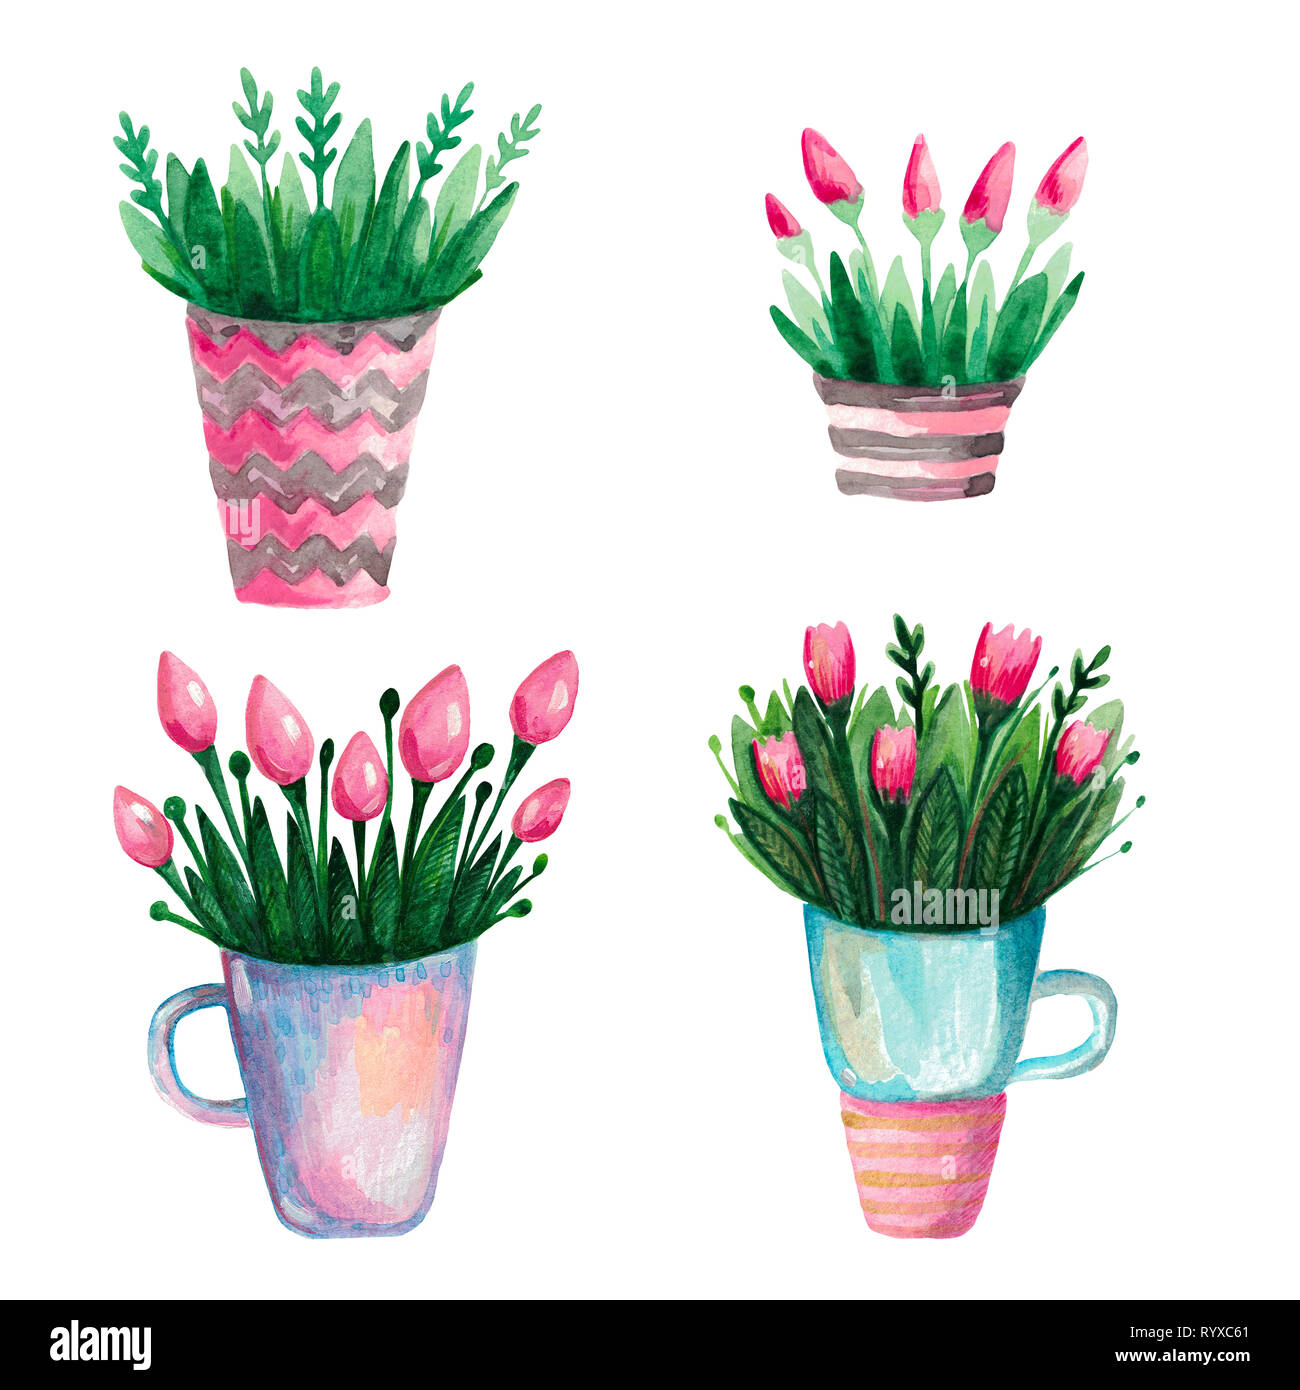 Aquarelle set est une collection d'printemps fleurs de tulipes dans un vase. Plantes à fleurs pour impression botanique Banque D'Images